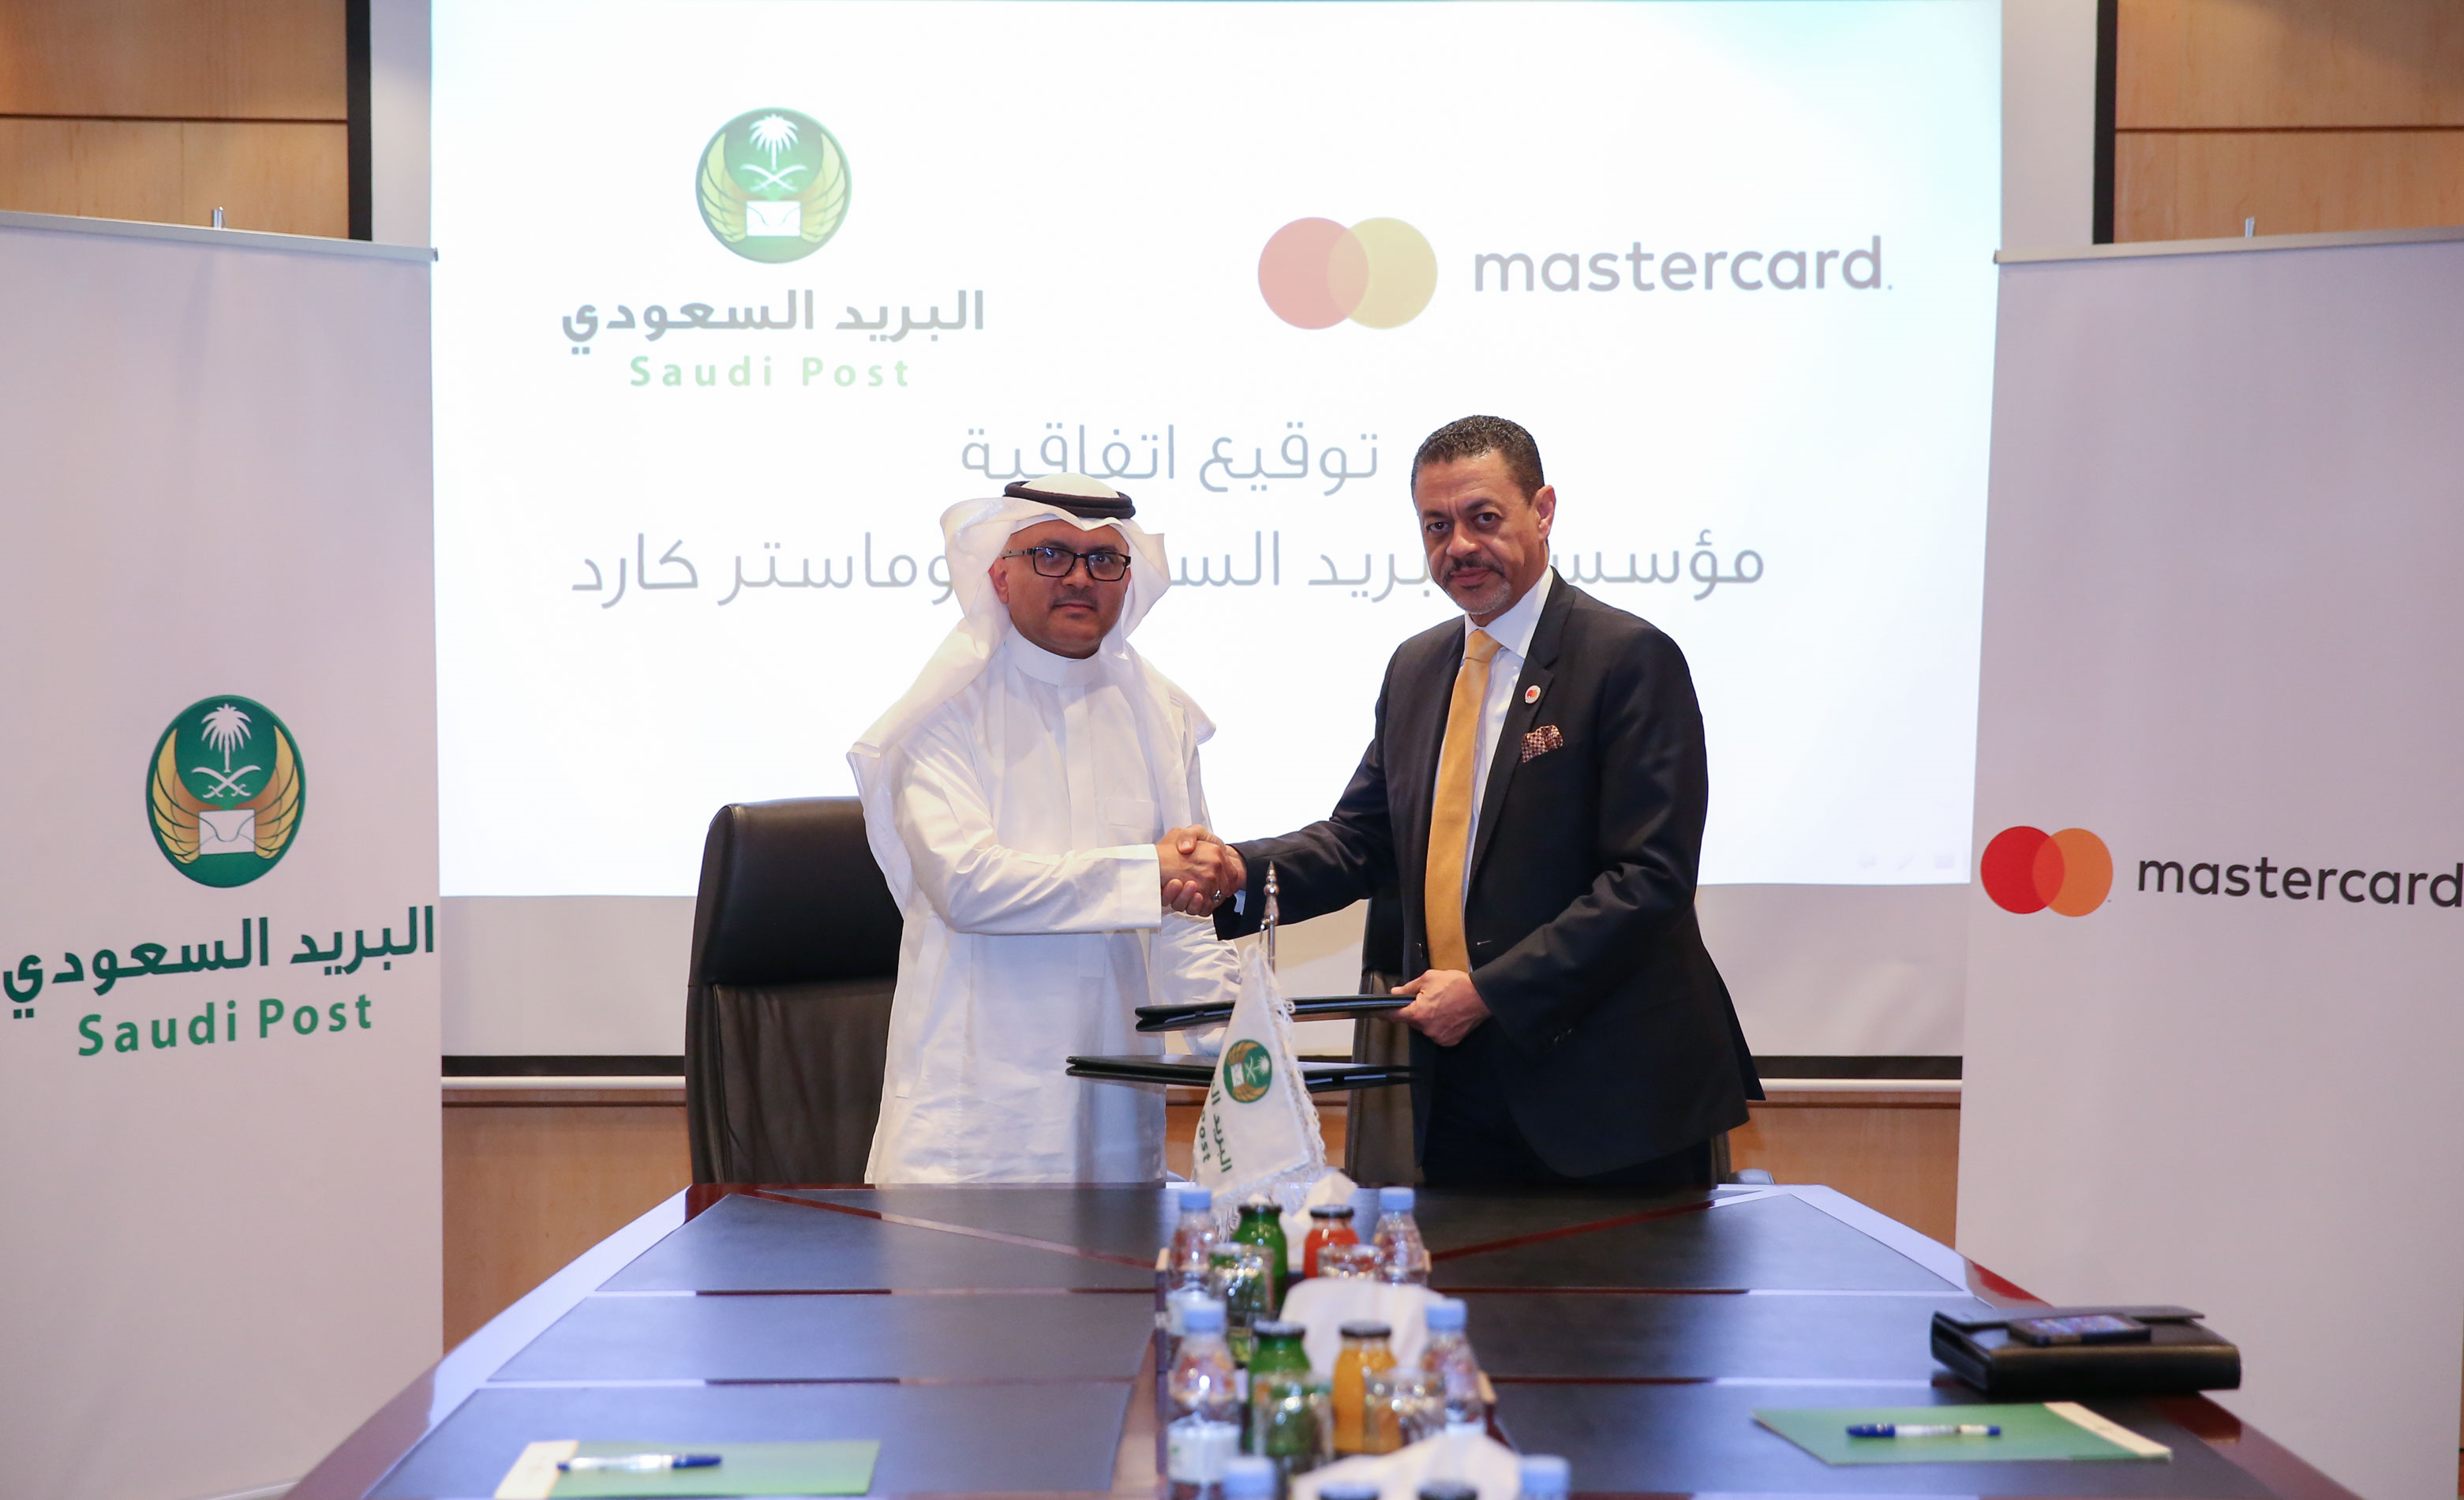 البريد السعودي وماستركارد تتعاونان لإتاحة قبول البطاقات المصرفية للعملاء في المتاجر وعبر الإنترنت ولتعزيز تجربة العملاء